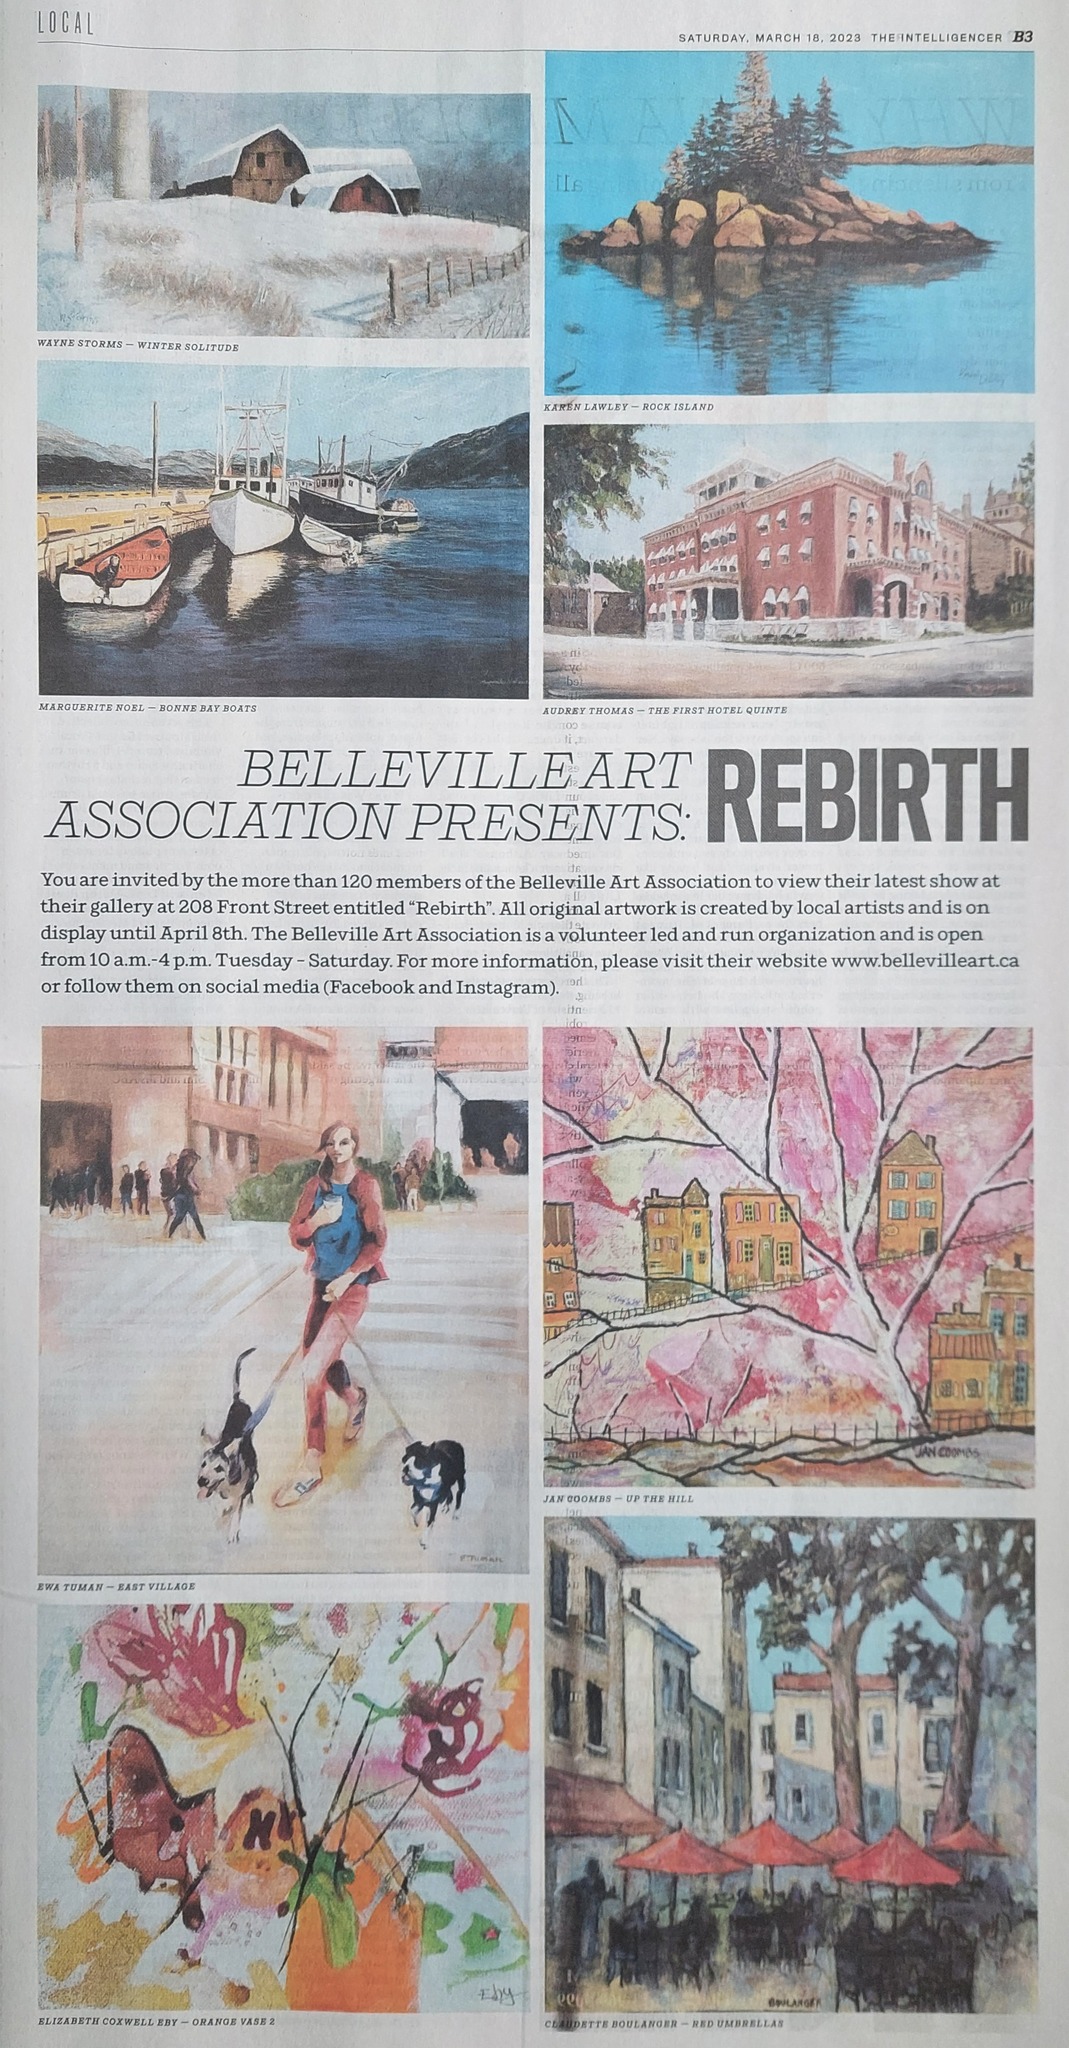 In the news Belleville Art Association